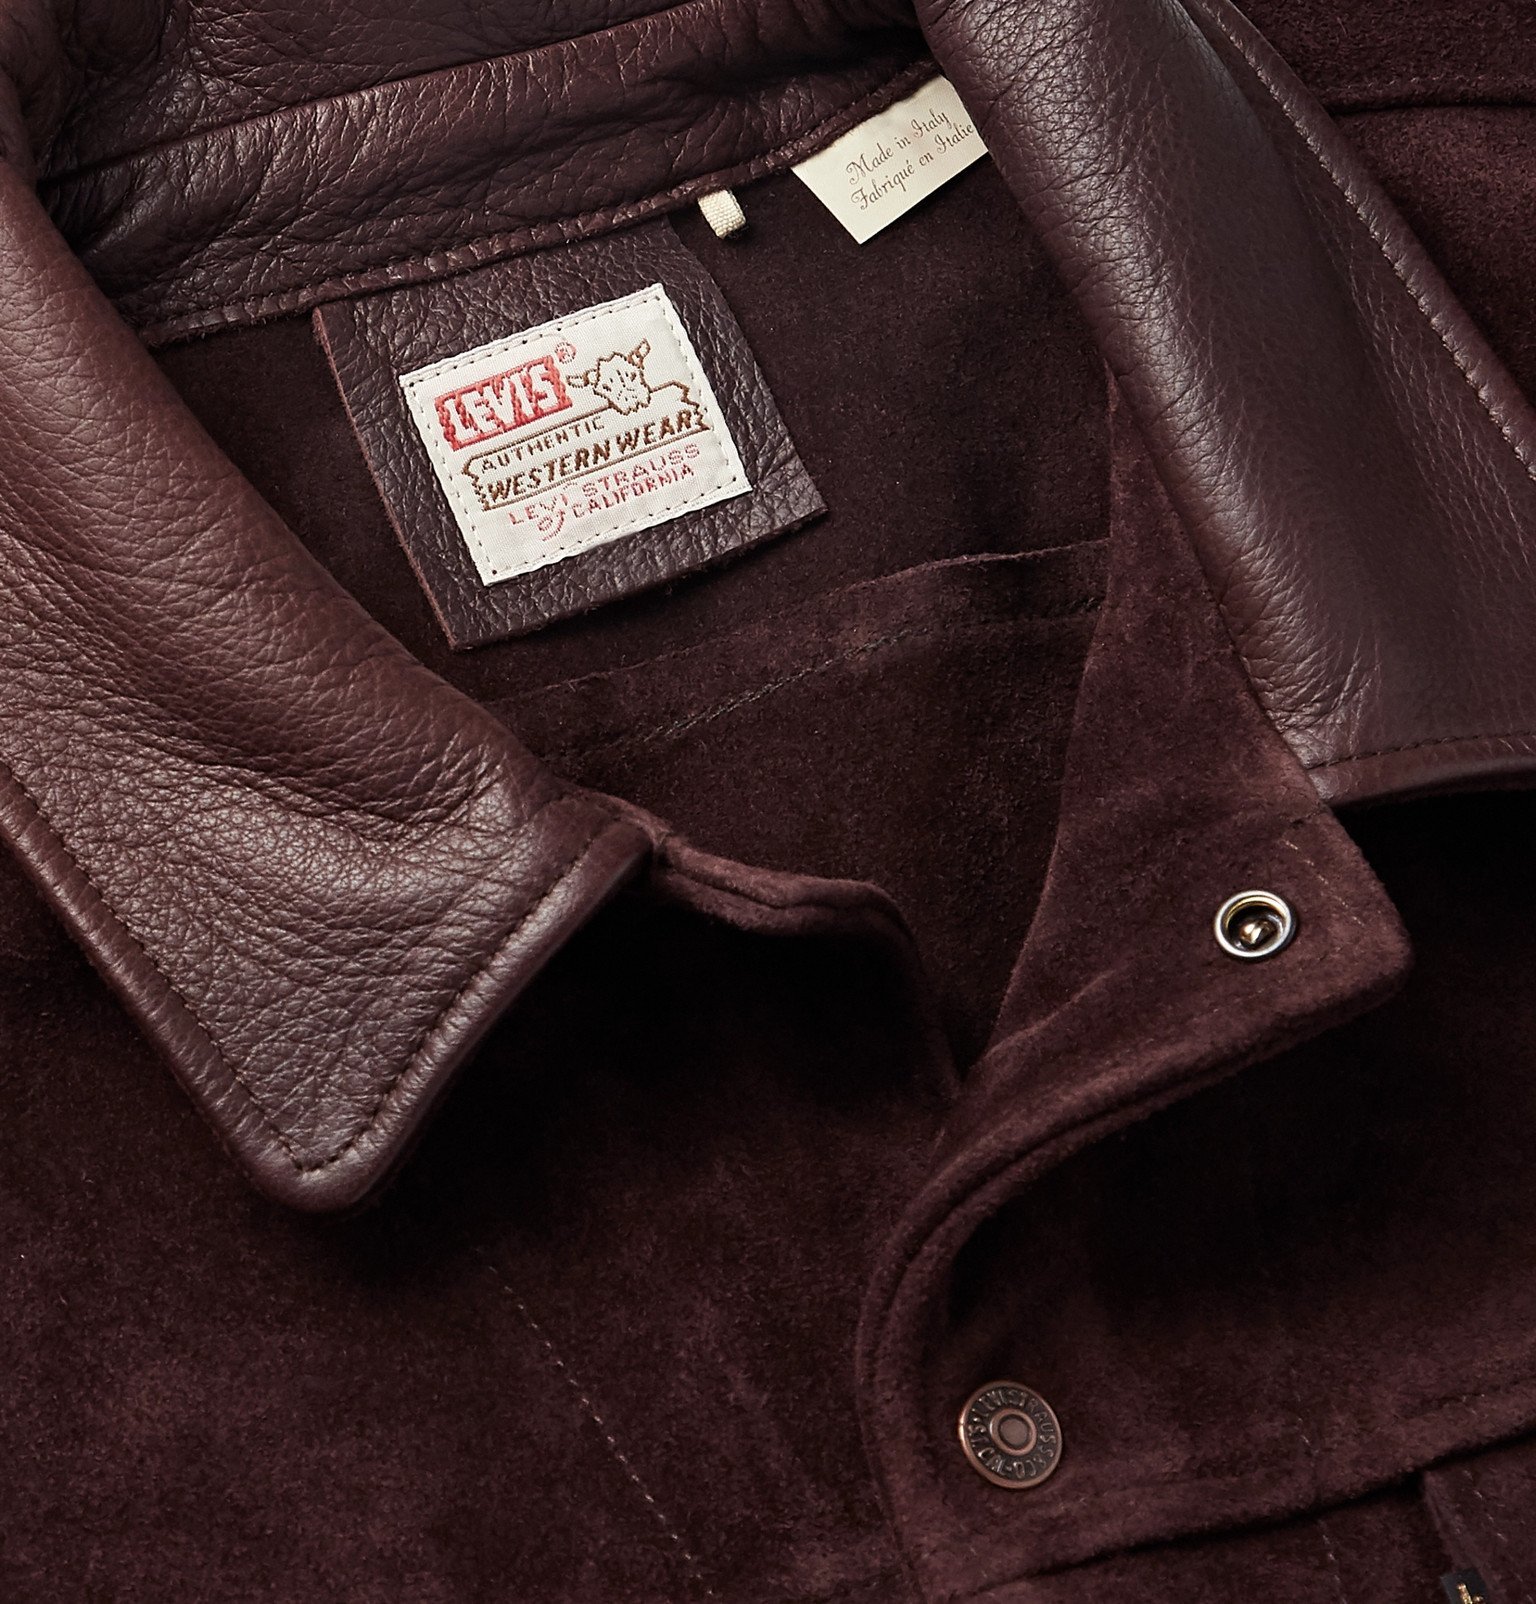 Levi's Vintage Clothing - Leather-Trimmed Suede Trucker Jacket - Brown  Levi's Vintage